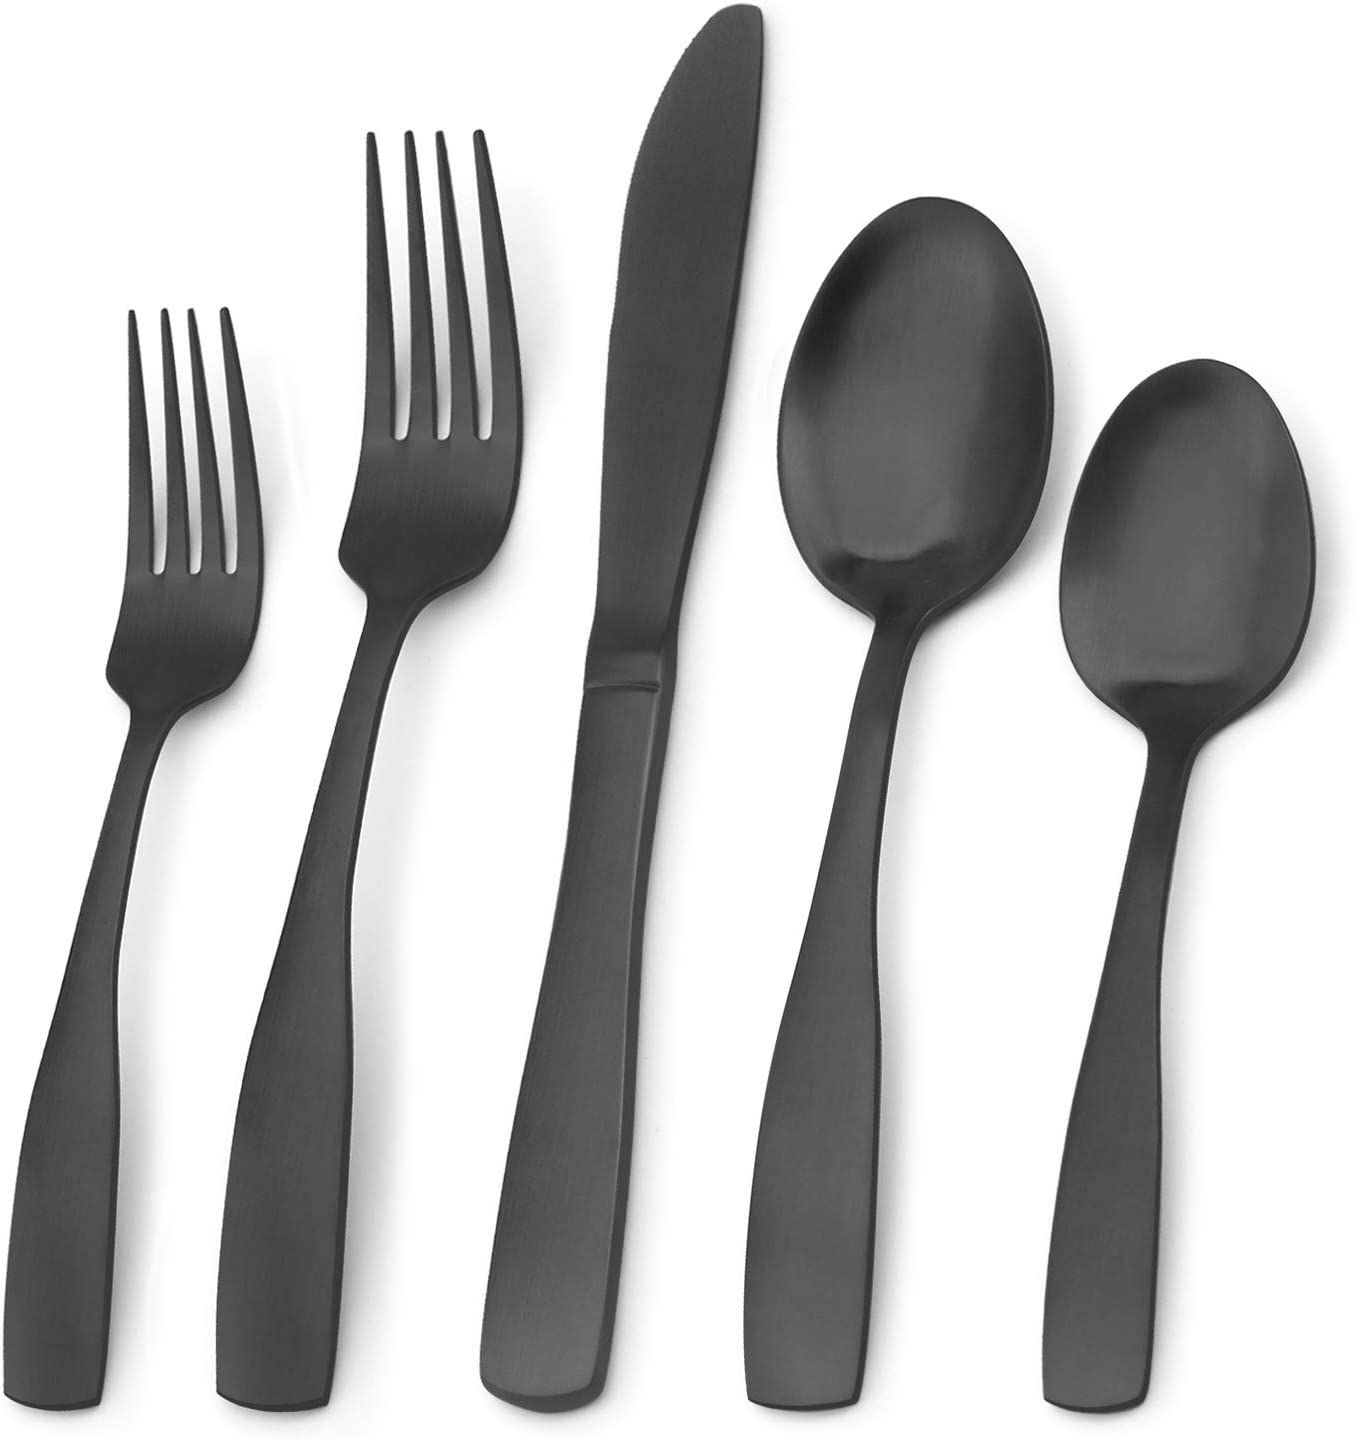 Matte Black Silverware Set, Bysta 20-Piece Stainless Steel Flatware Set, Kitchen Utensil Set Serv... | Amazon (US)